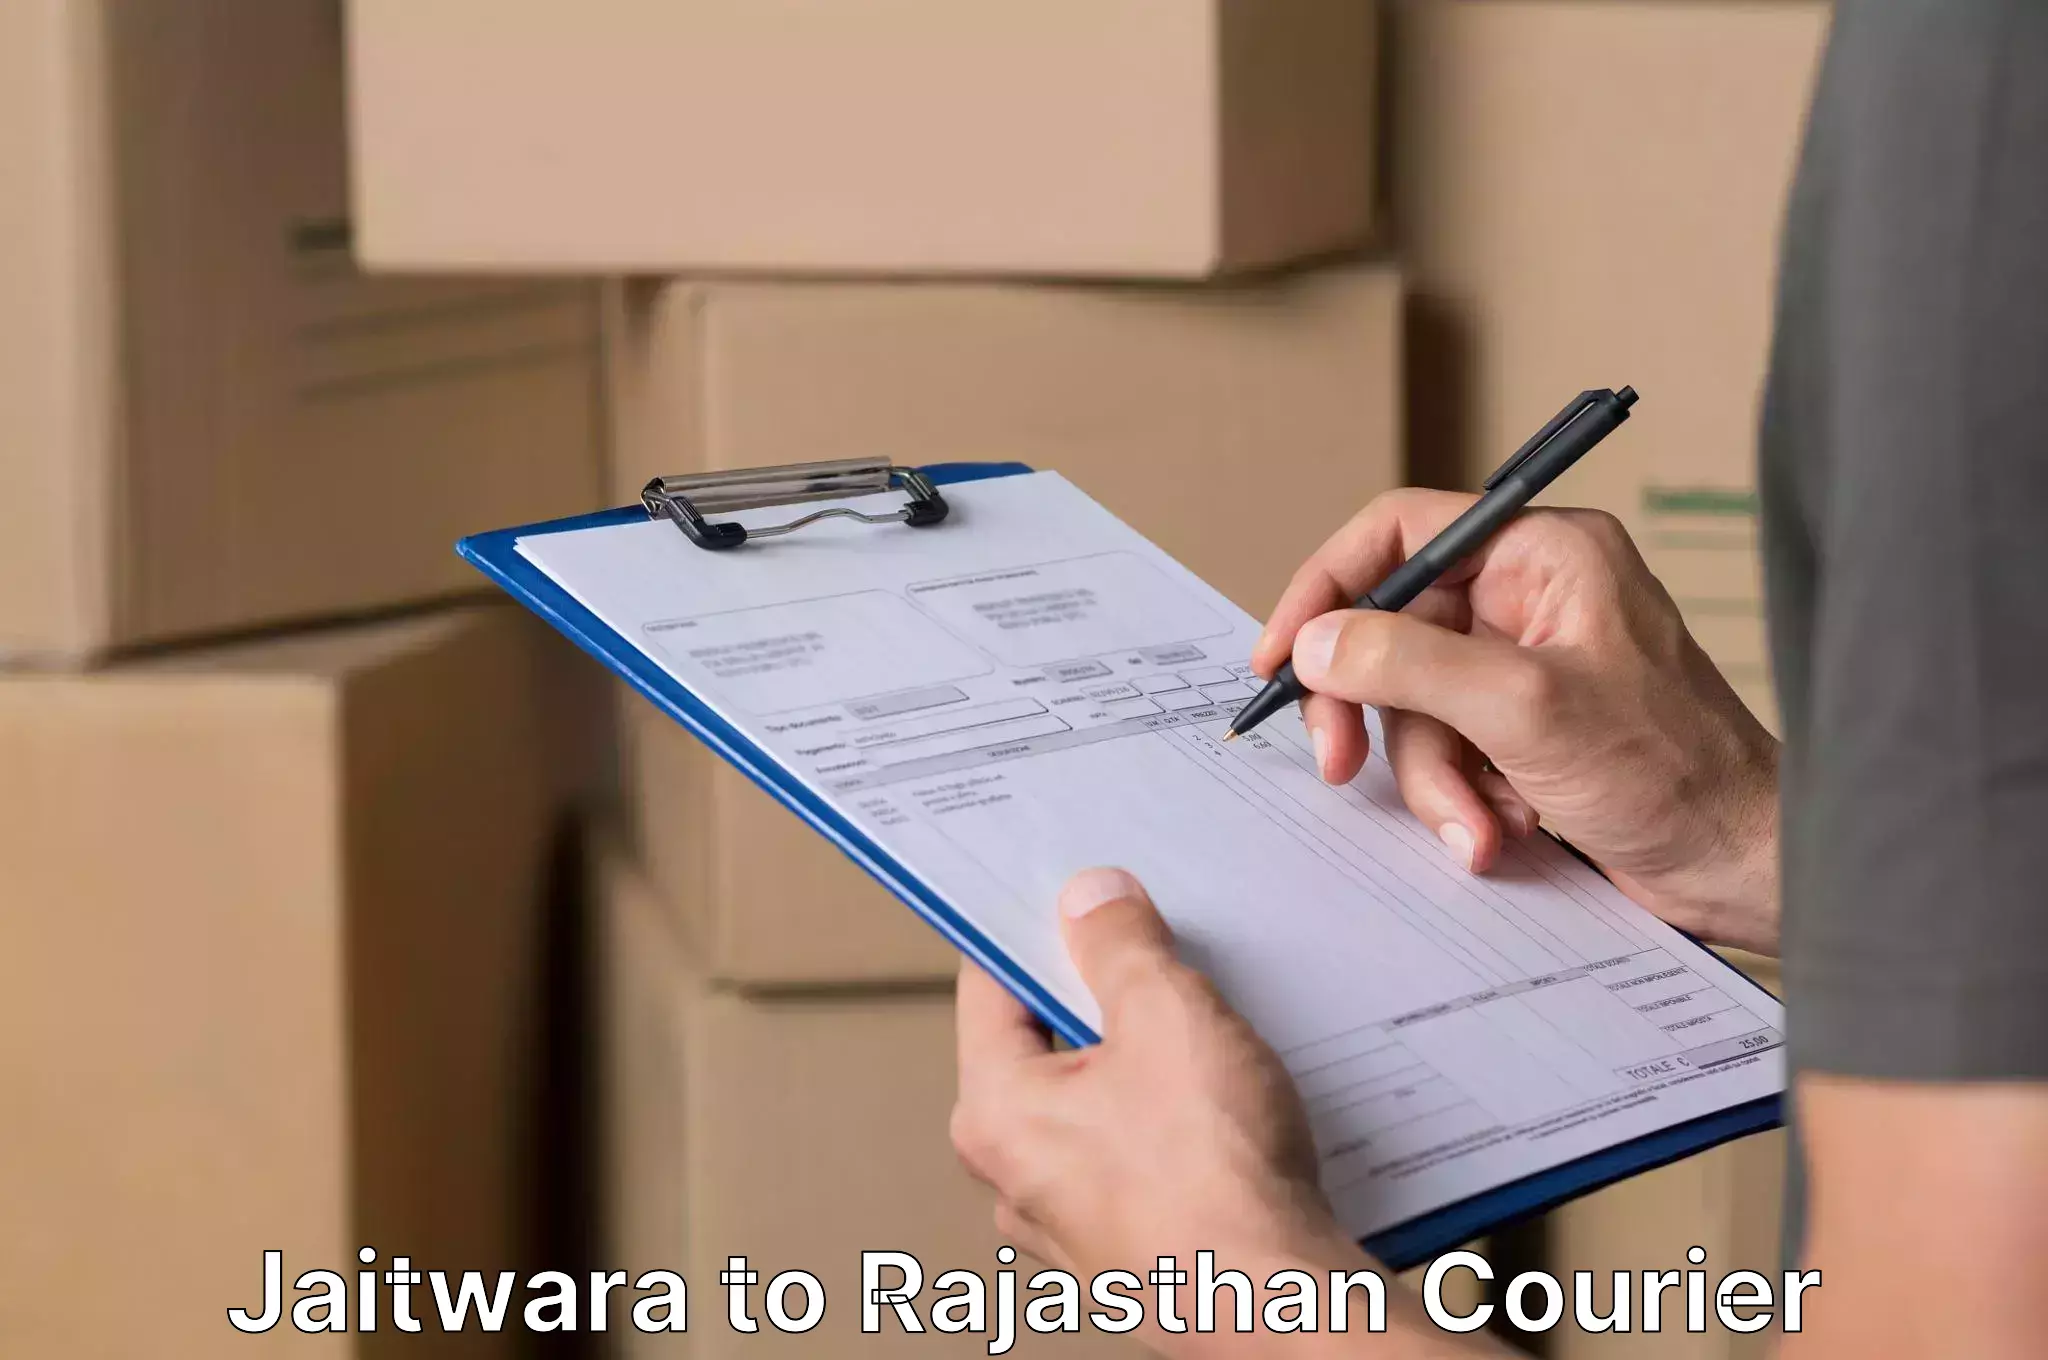 Quality moving and storage Jaitwara to Alwar